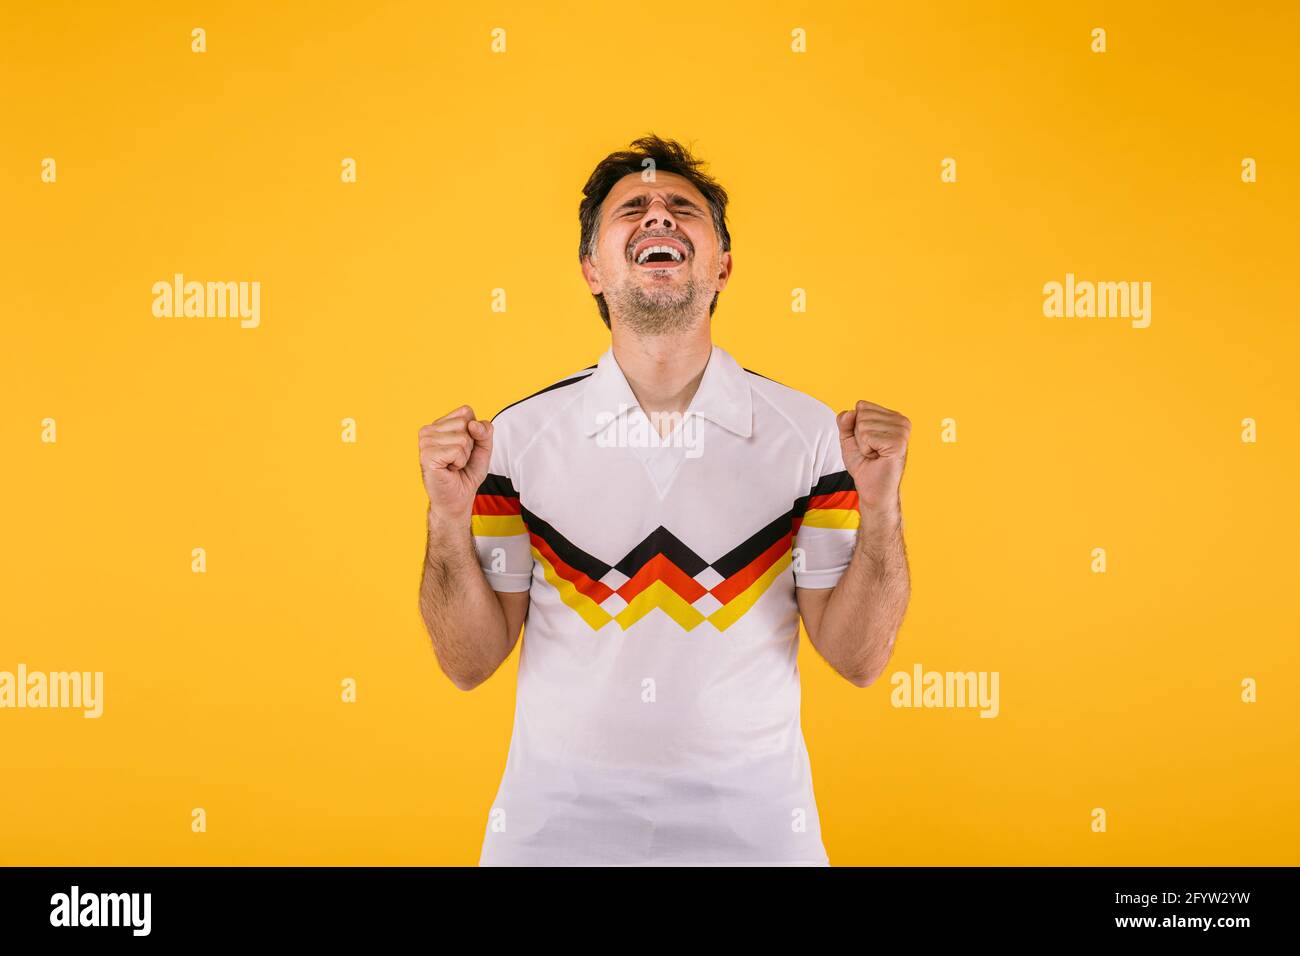 al fútbol que lleva una camiseta blanca con rayas negras, rojas amarillas, aplasta a sus puños y grita aclamando a equipo Fotografía de stock - Alamy